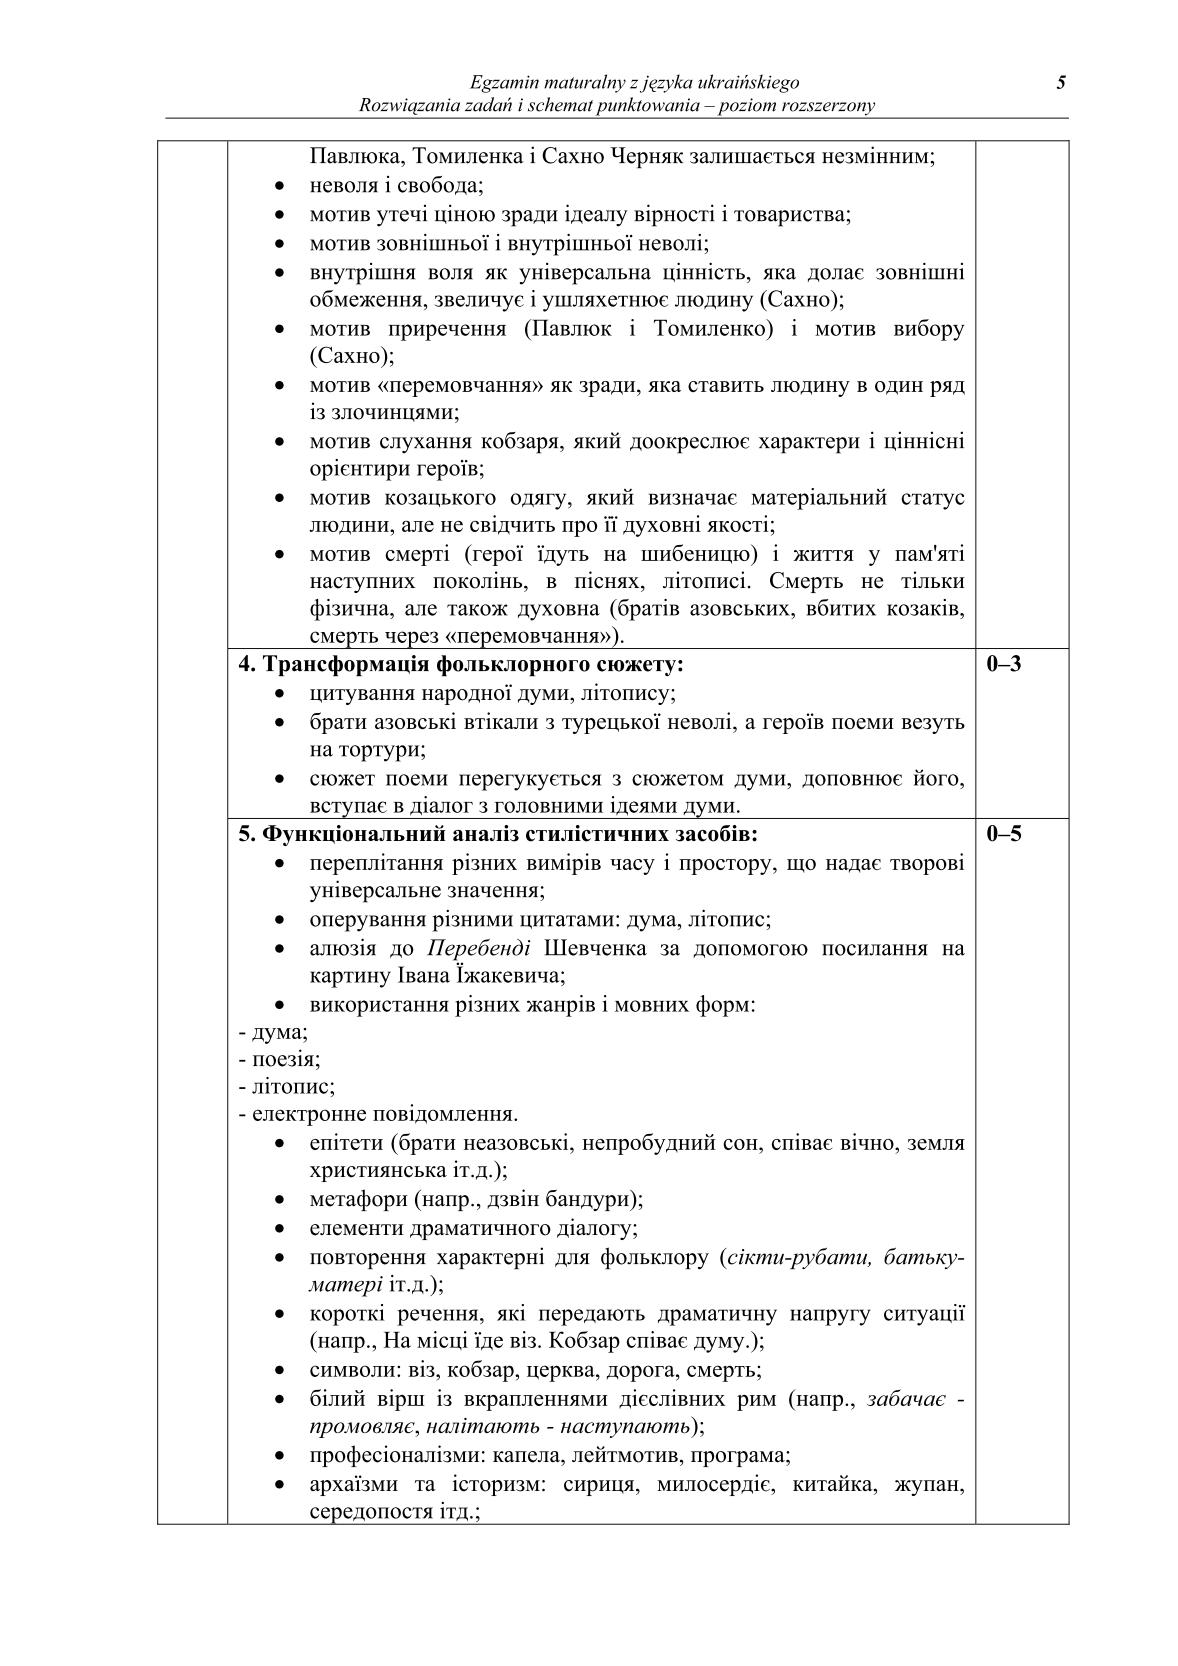 odpowiedzi-jezyk-ukrainski-poziom-rozszerzony-matura-2014-str.5